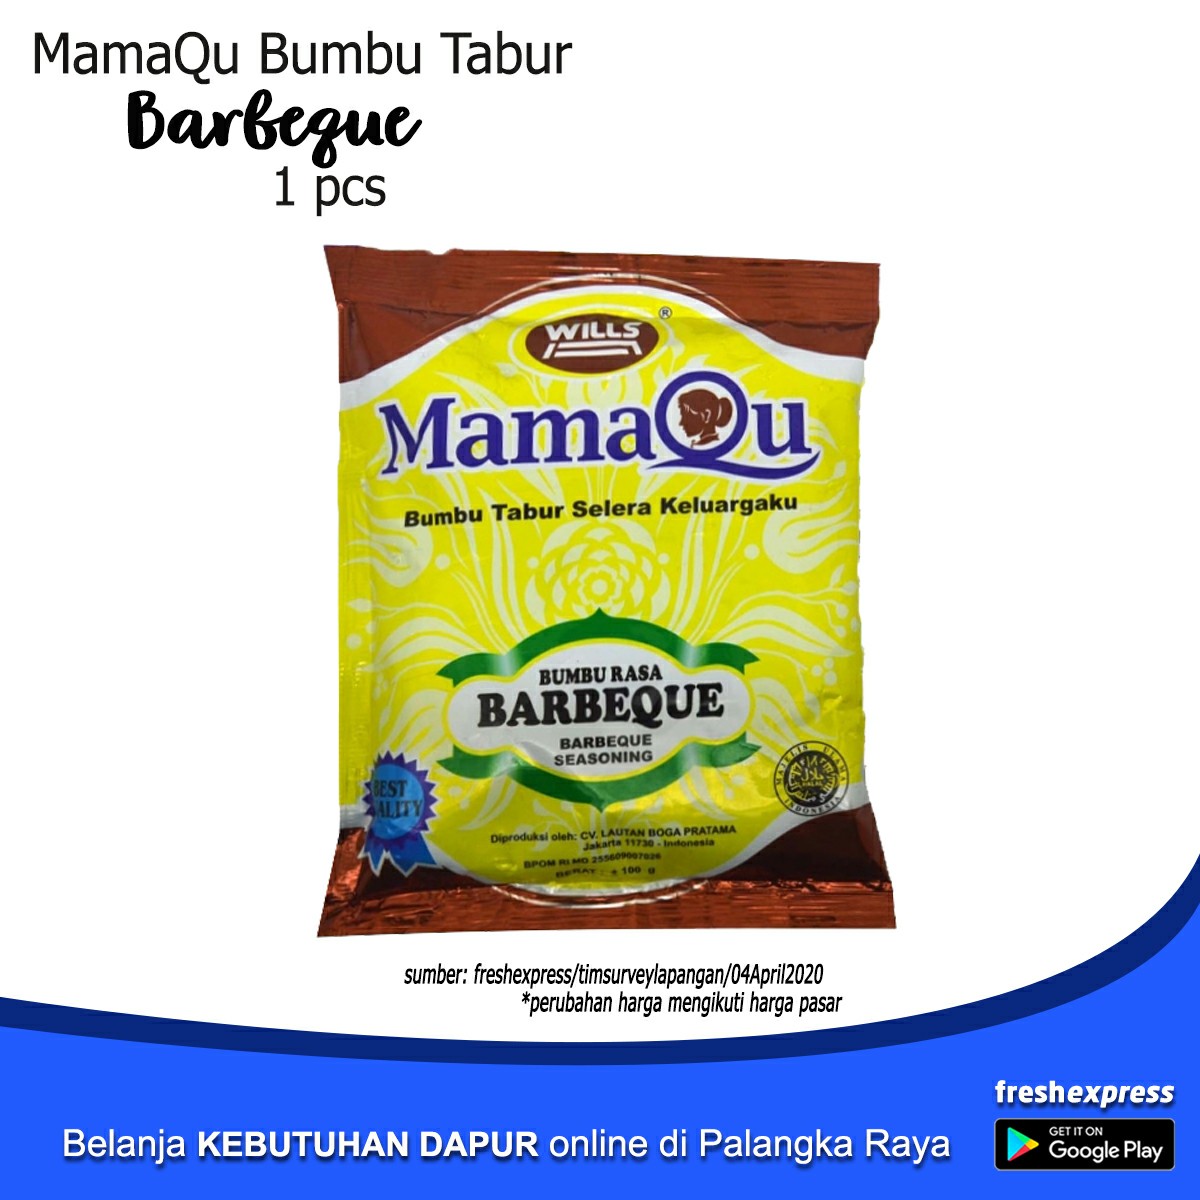 MamaQu Bumbu Tabur Barbeque 1 Pcs